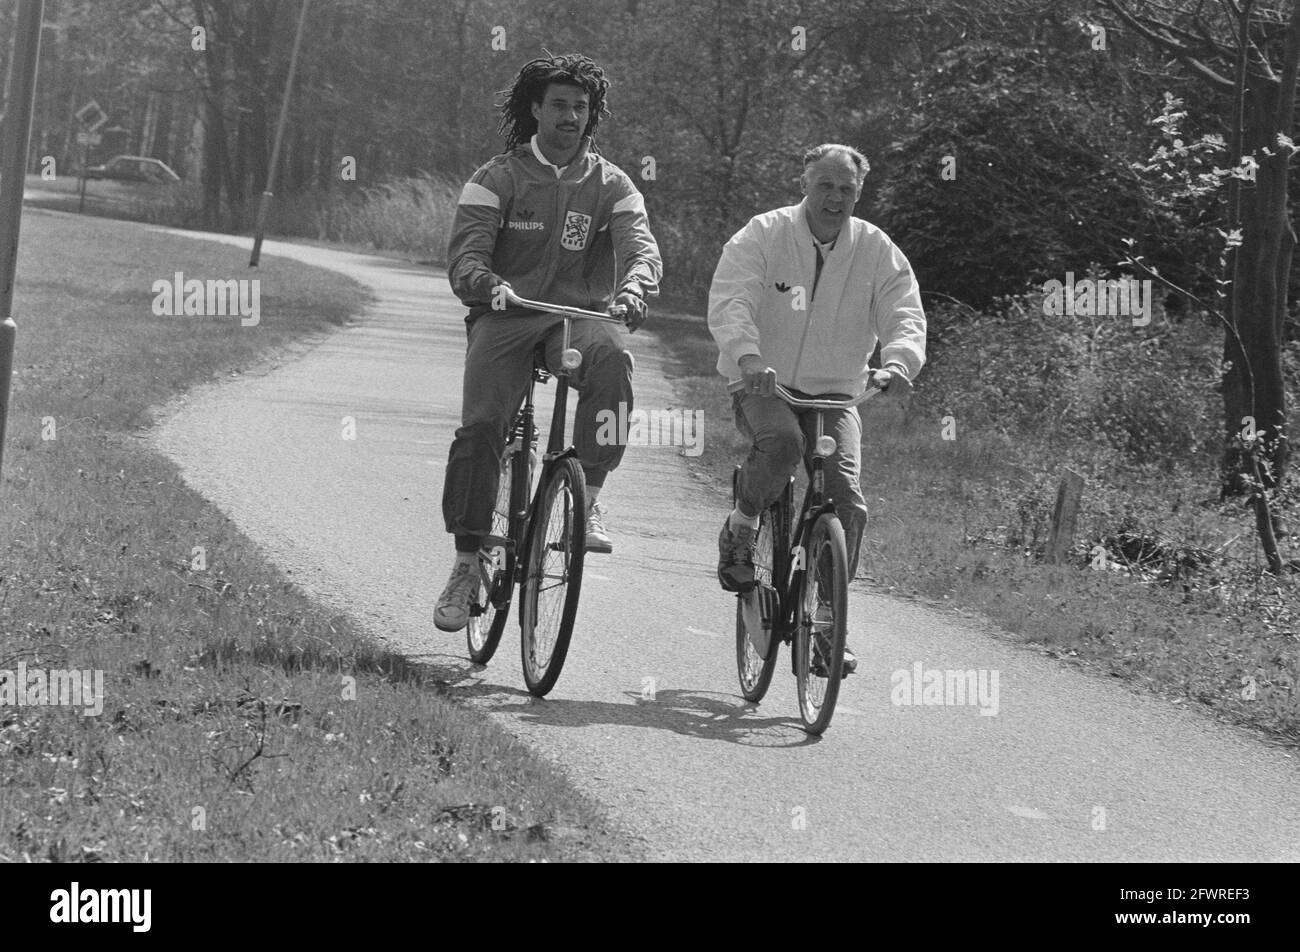 L'équipe néerlandaise fait une balade en vélo à Zeist; Ruud Gull (L) et  Rinus Michels Date: 27 avril 1987 lieu: Utrecht, Zeist mots clés: Équipes,  sports, football Nom: Gullit, Ruud Michels, Rinus